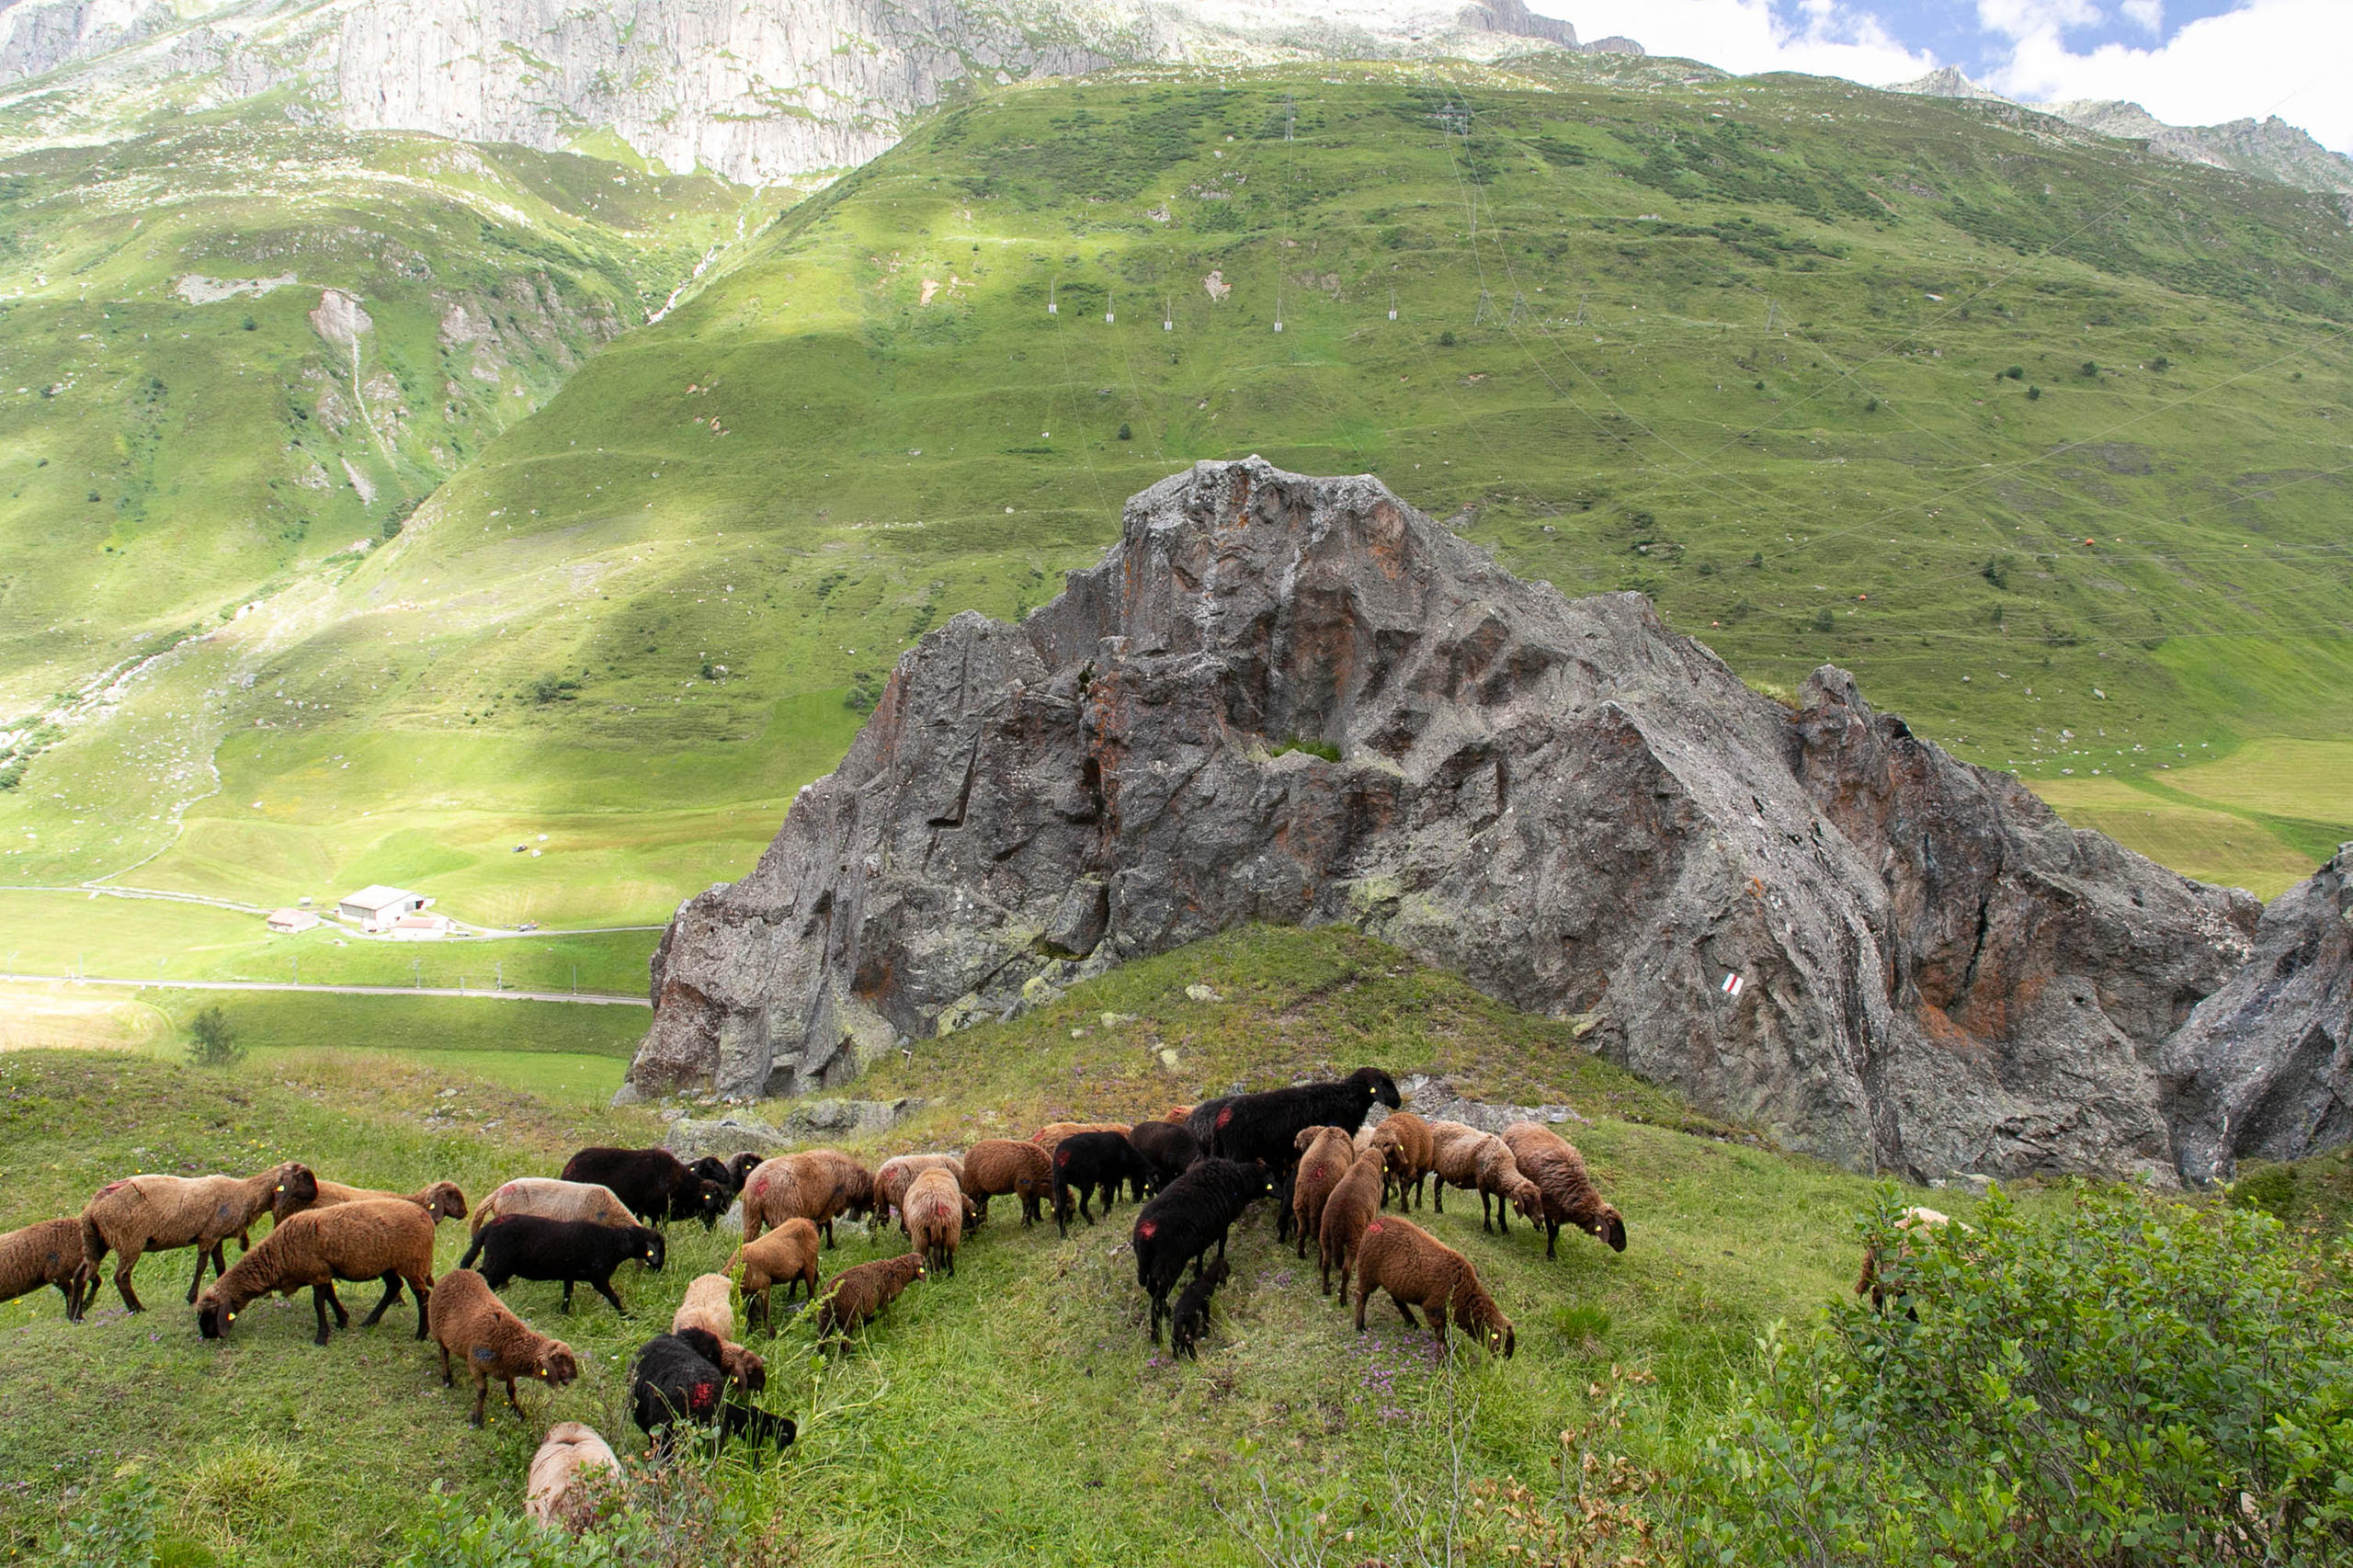 Moutons dans un paysage montagneux sans arbres